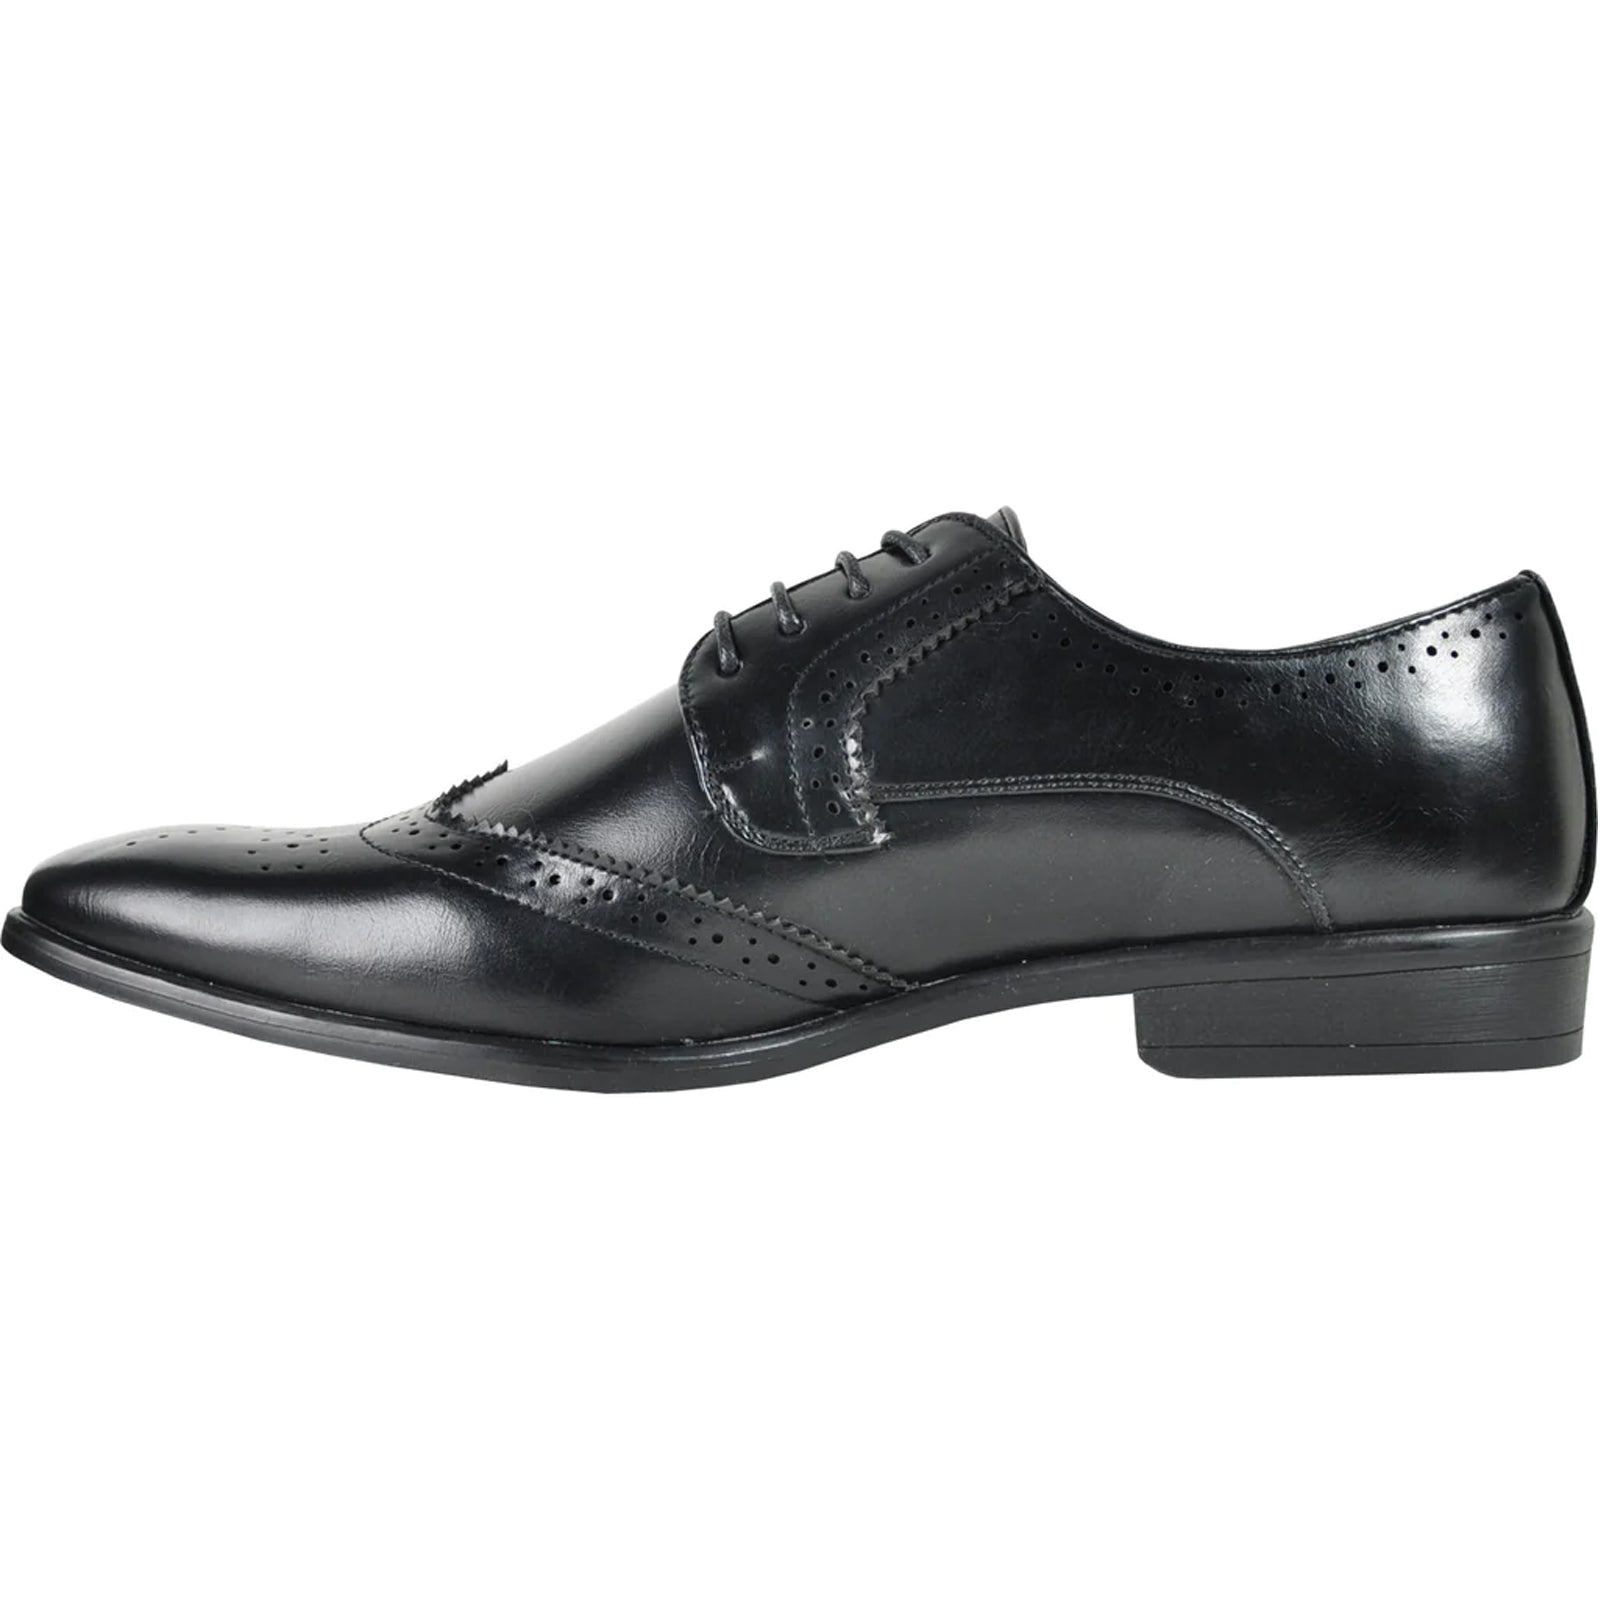 "Vintage 1920's Men's Wingtip Dress Shoe - Black Lace Up Style"